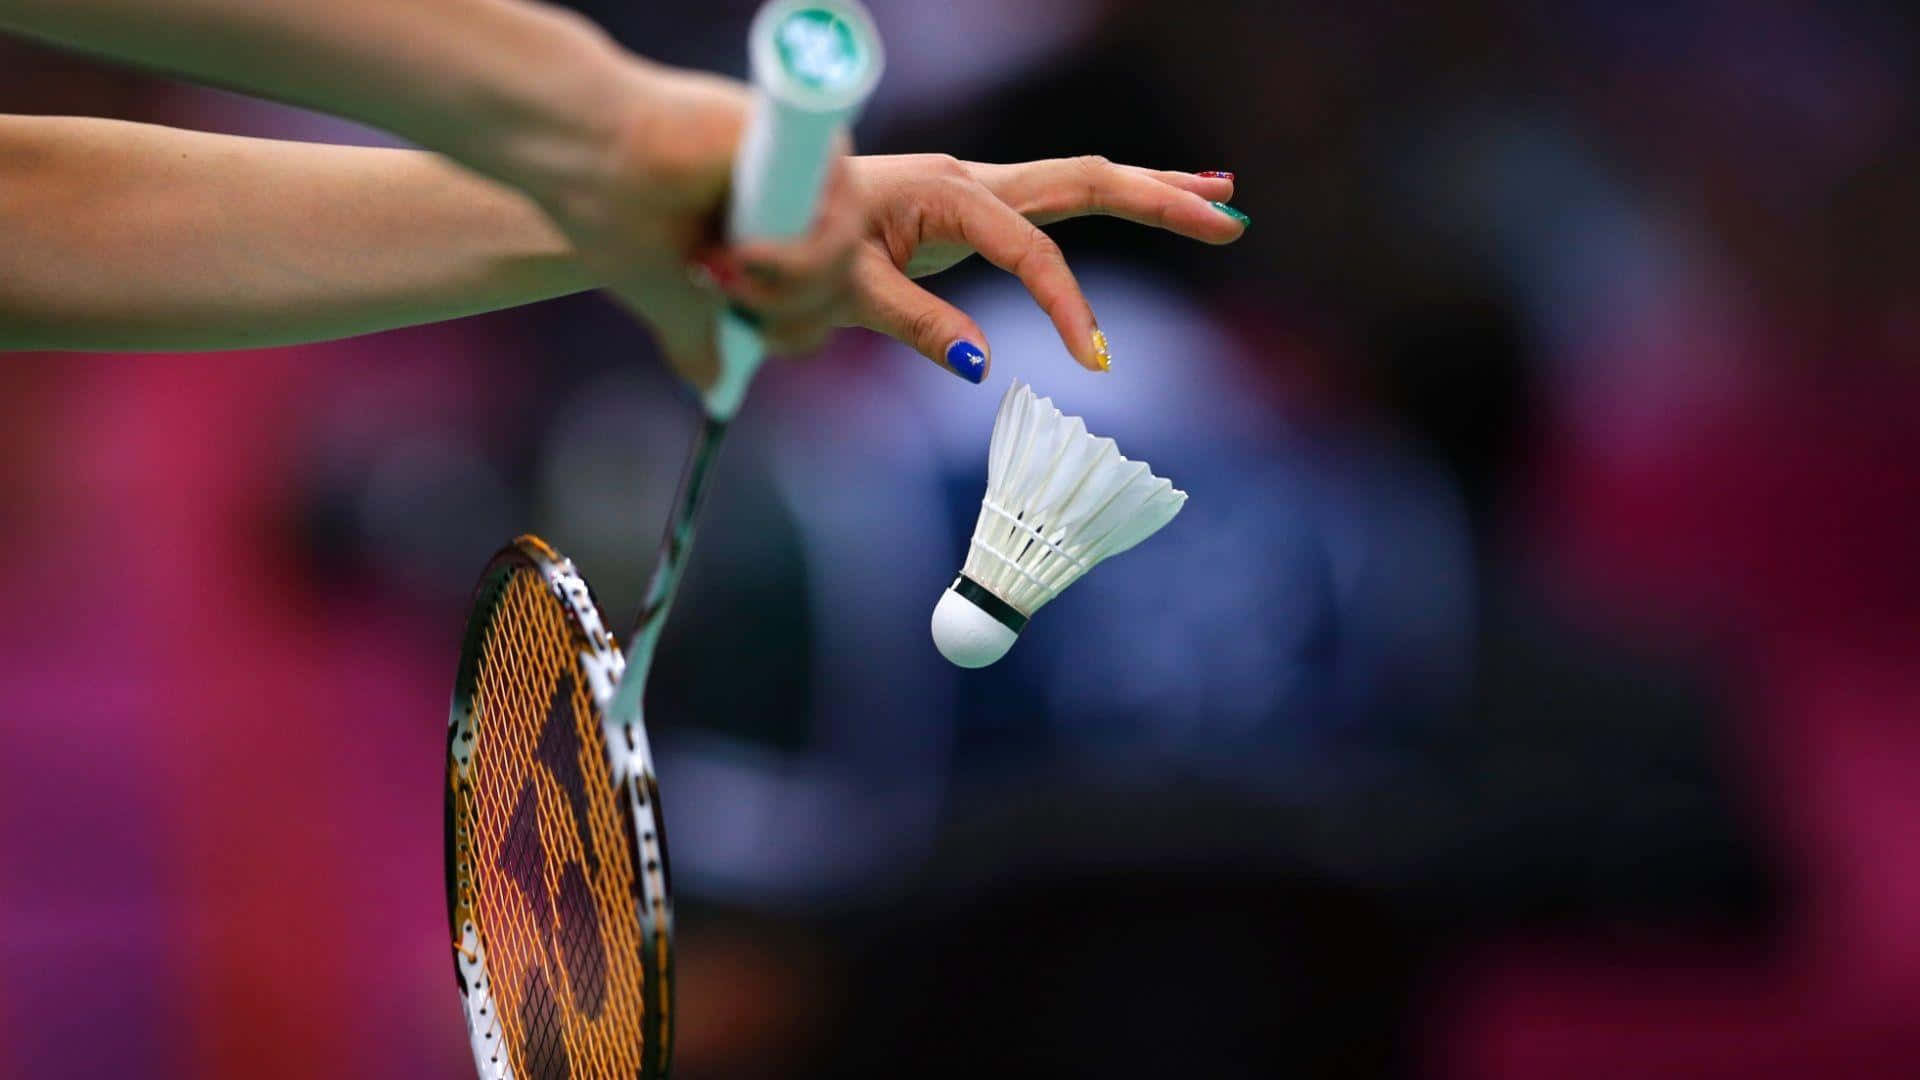 Ettögonblick Av Fokus För En Badmintonspelare.